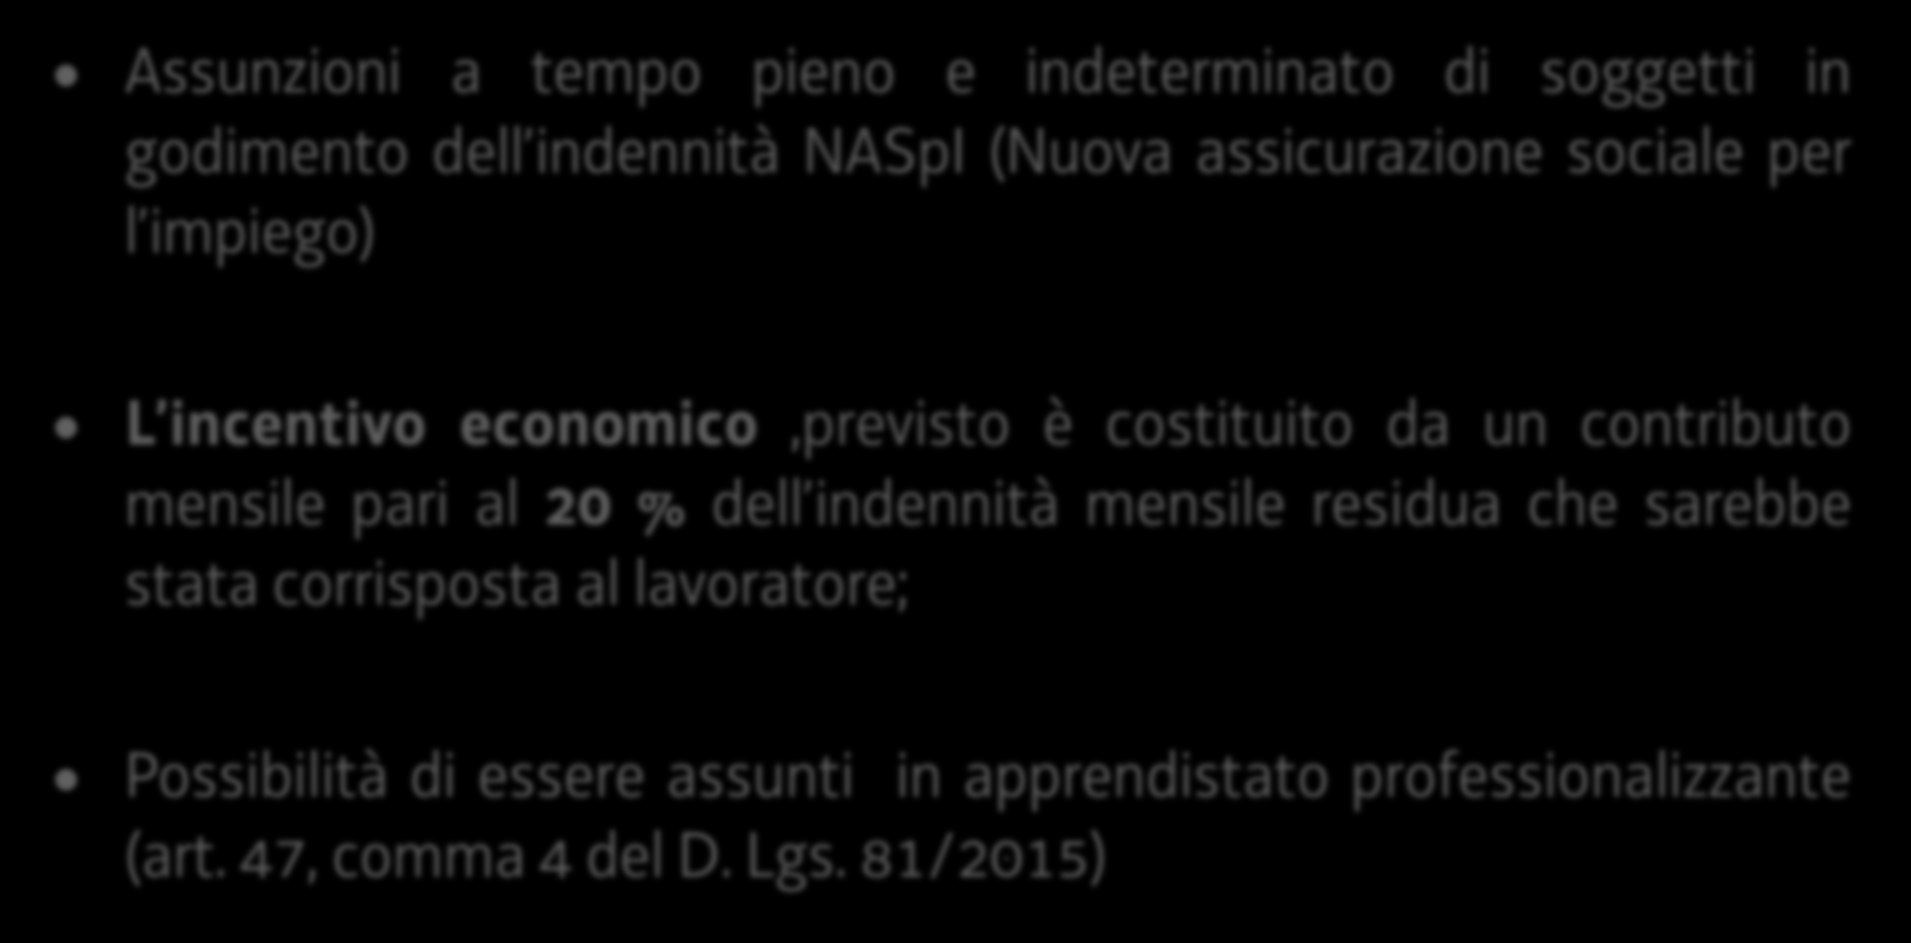 Incentivi Lavoratori in NASpI (Legge 92/2012 articolo 2 comma 10bis) Assunzioni a tempo pieno e indeterminato di soggetti in godimento dell indennità NASpI (Nuova assicurazione sociale per l impiego)